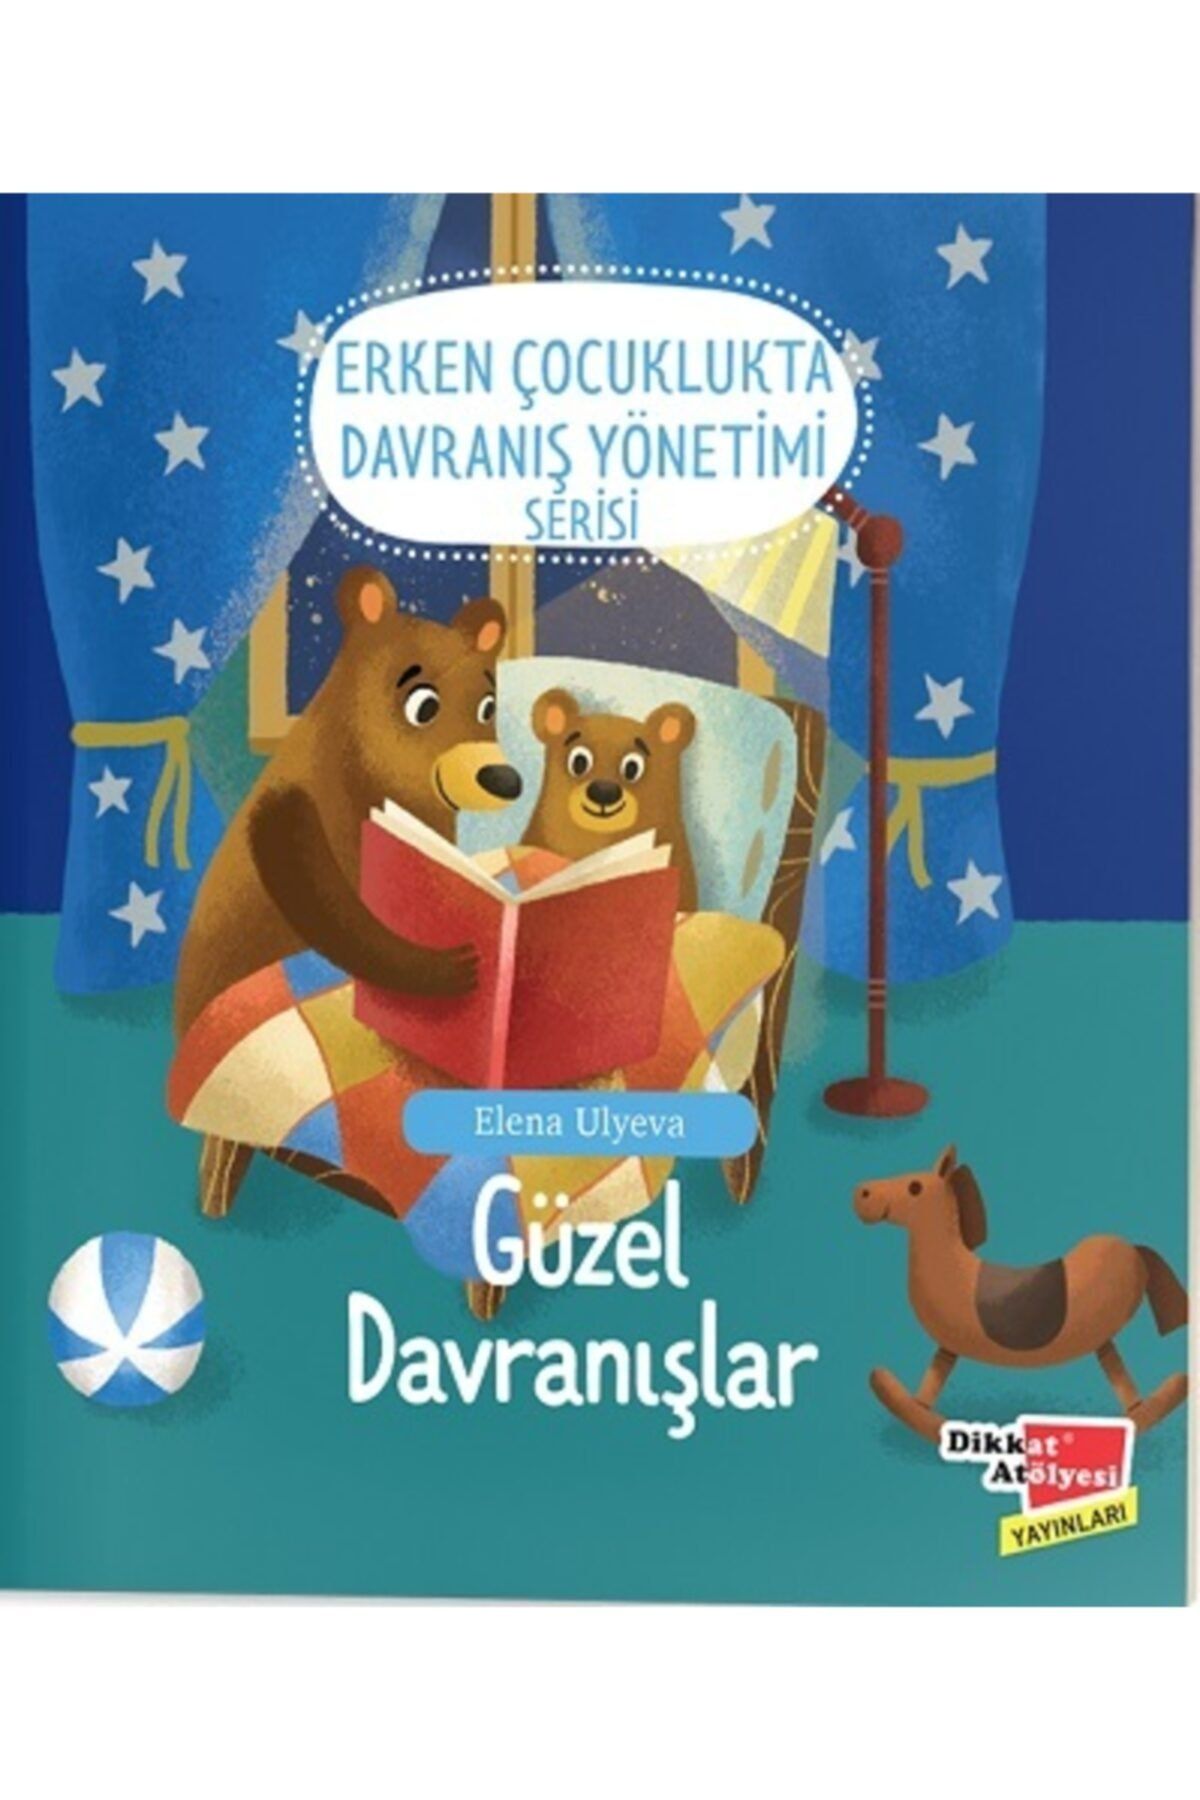 Dikkat Atölyesi Yayınları Güzel Davranışlar - Erken Çocuklukta Davranış Yönetimi